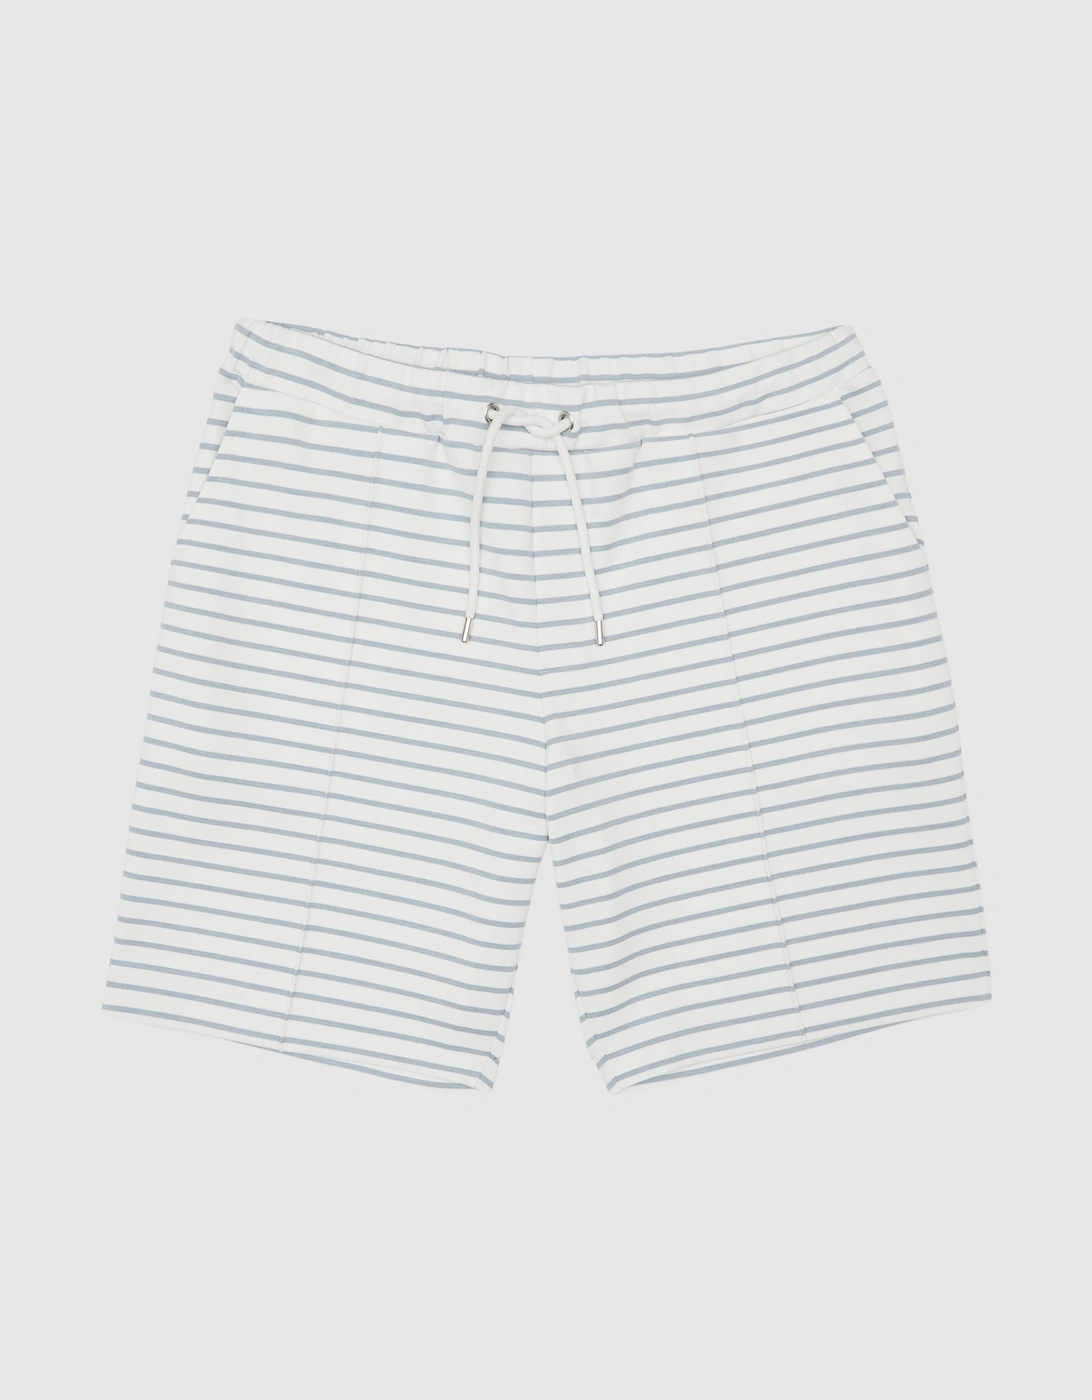 Stripe Shorts, 2 of 1